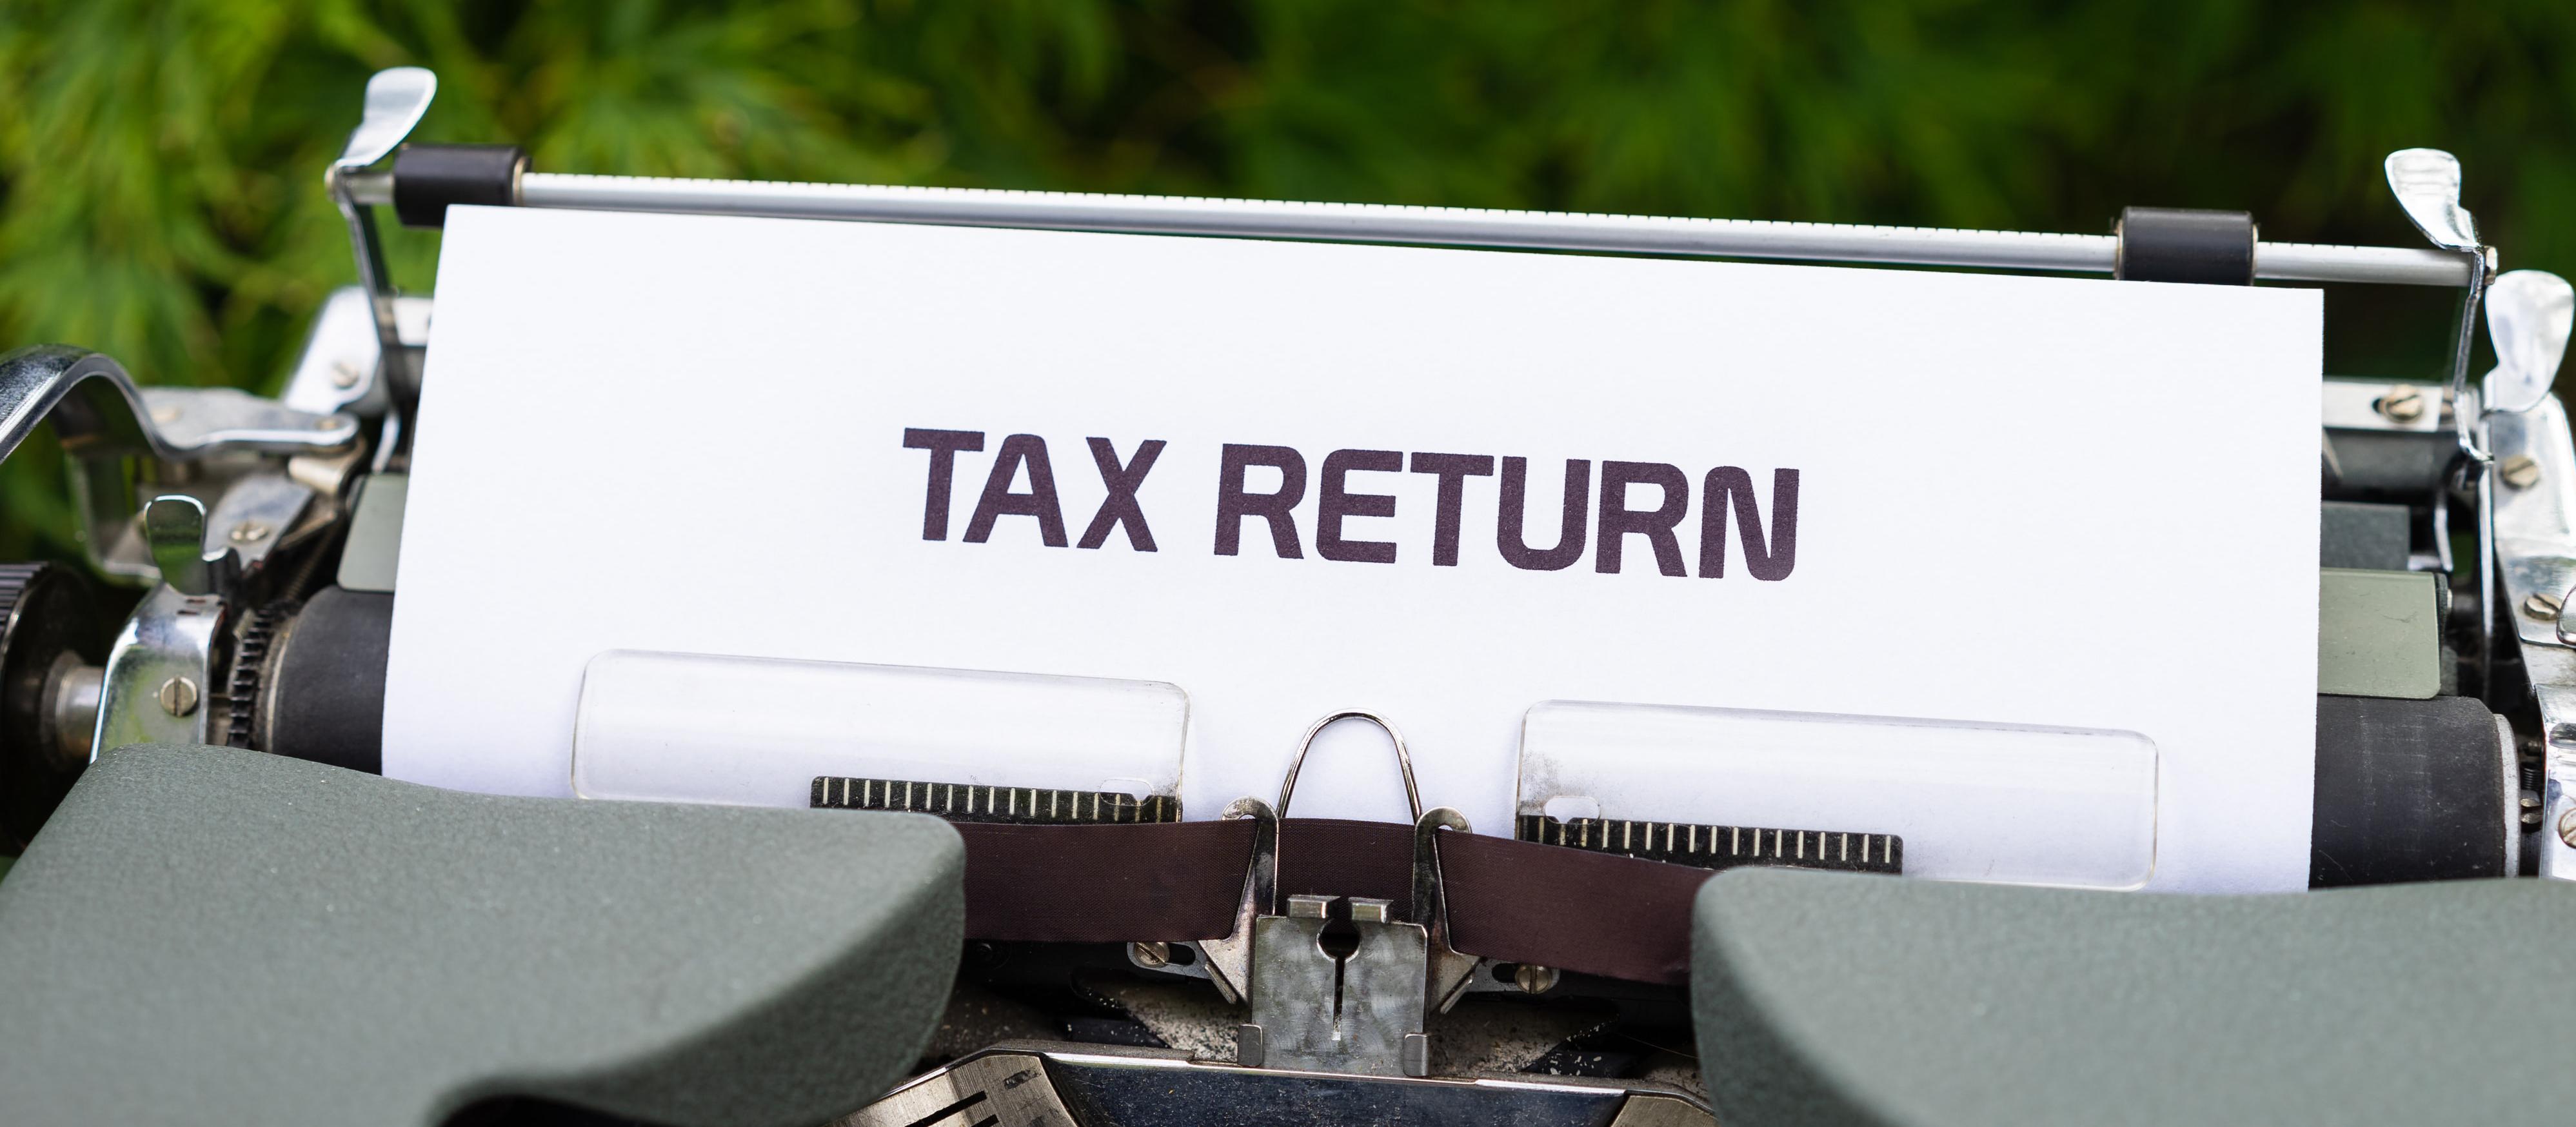 Tax return on typewrite - Markus Winkler on Unsplash